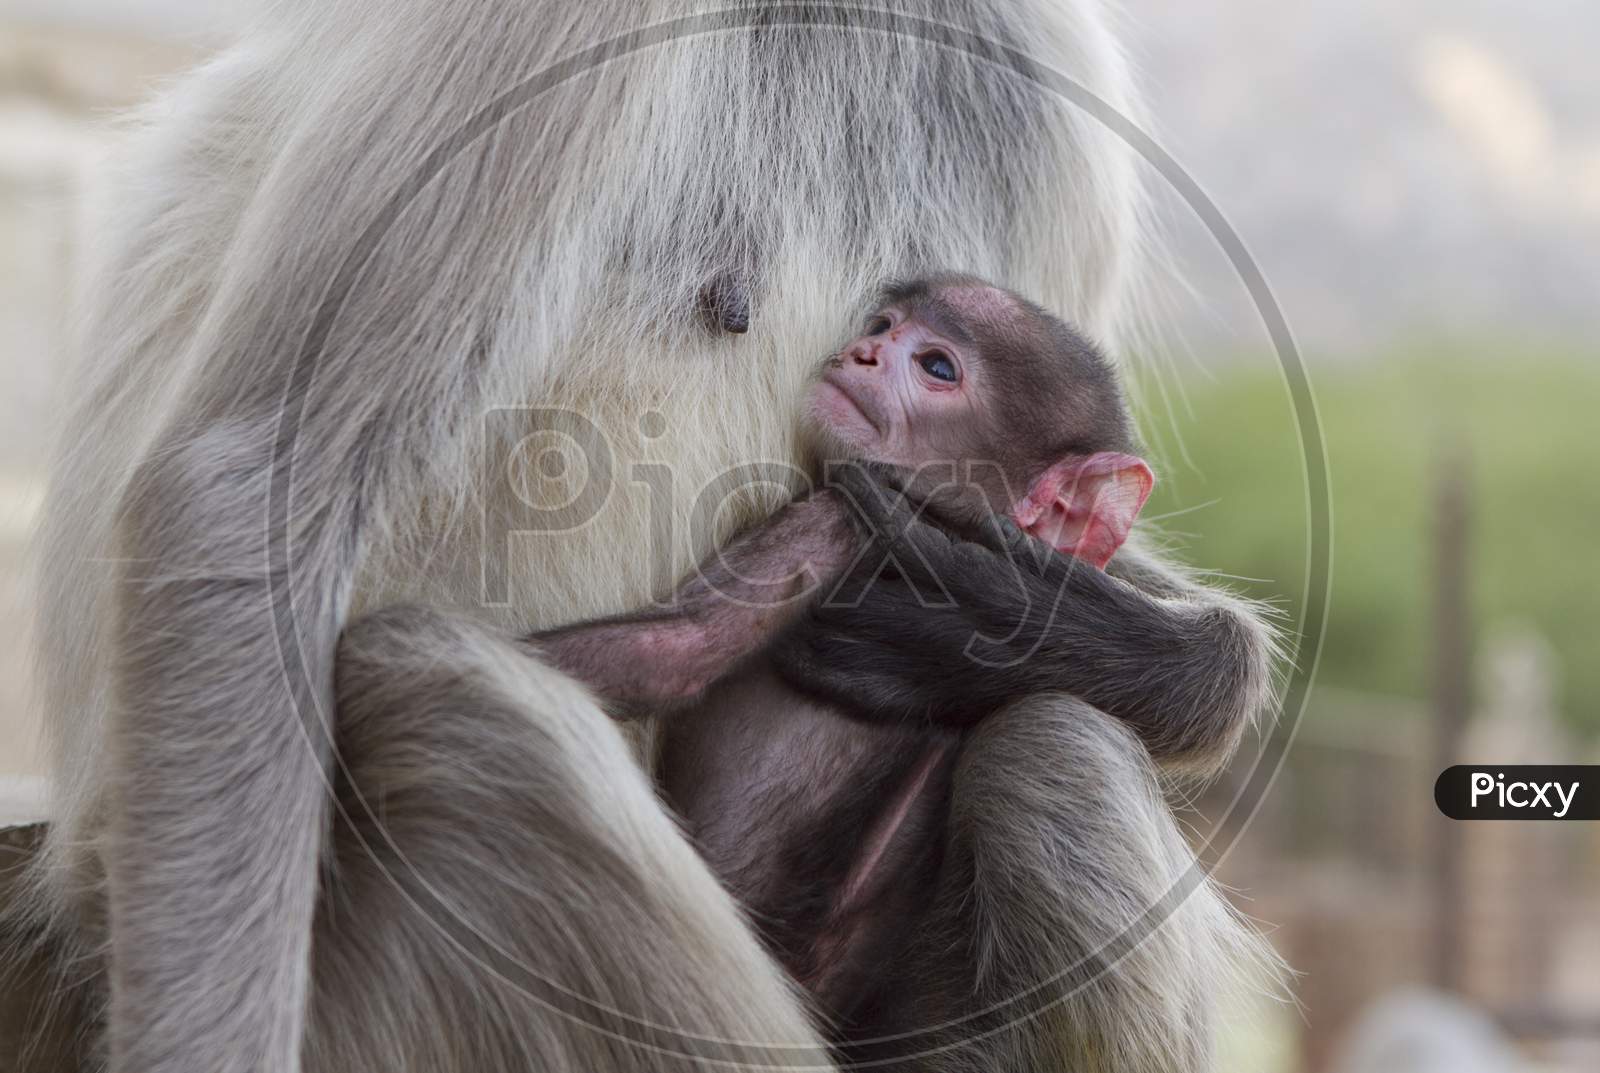 Breastfeeding Monkey